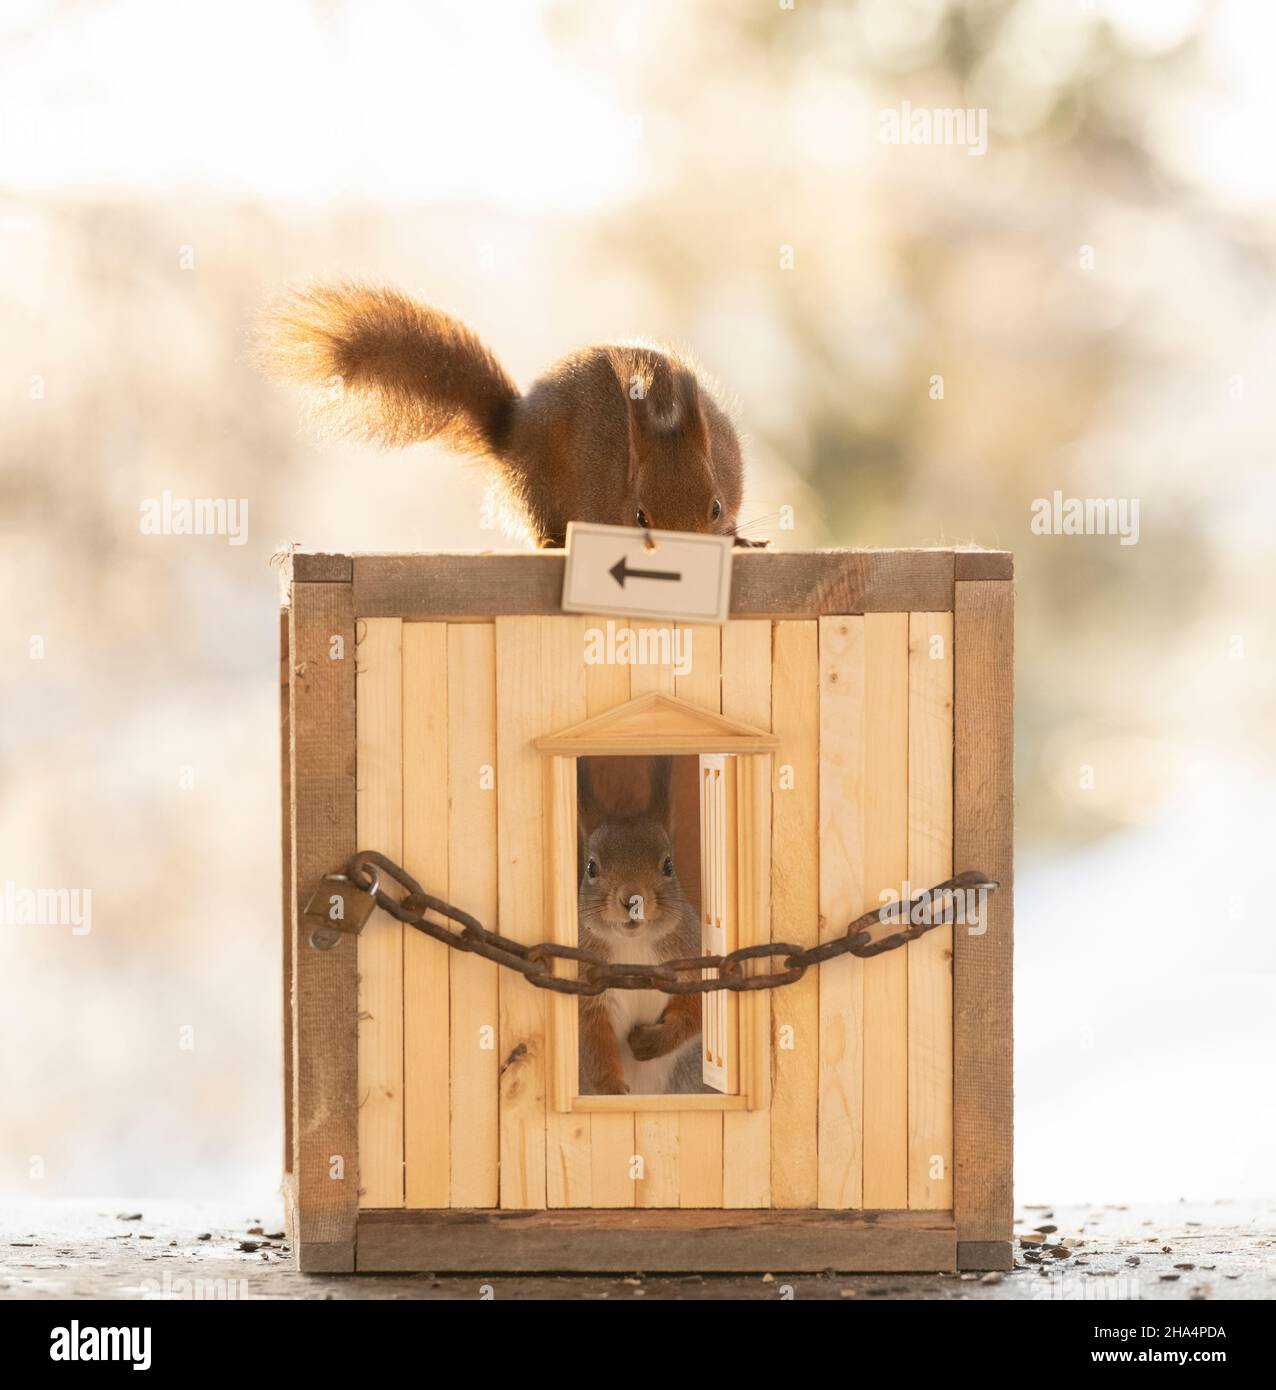 gli scoiattoli rossi sono in piedi dietro una catena in una scatola Foto Stock